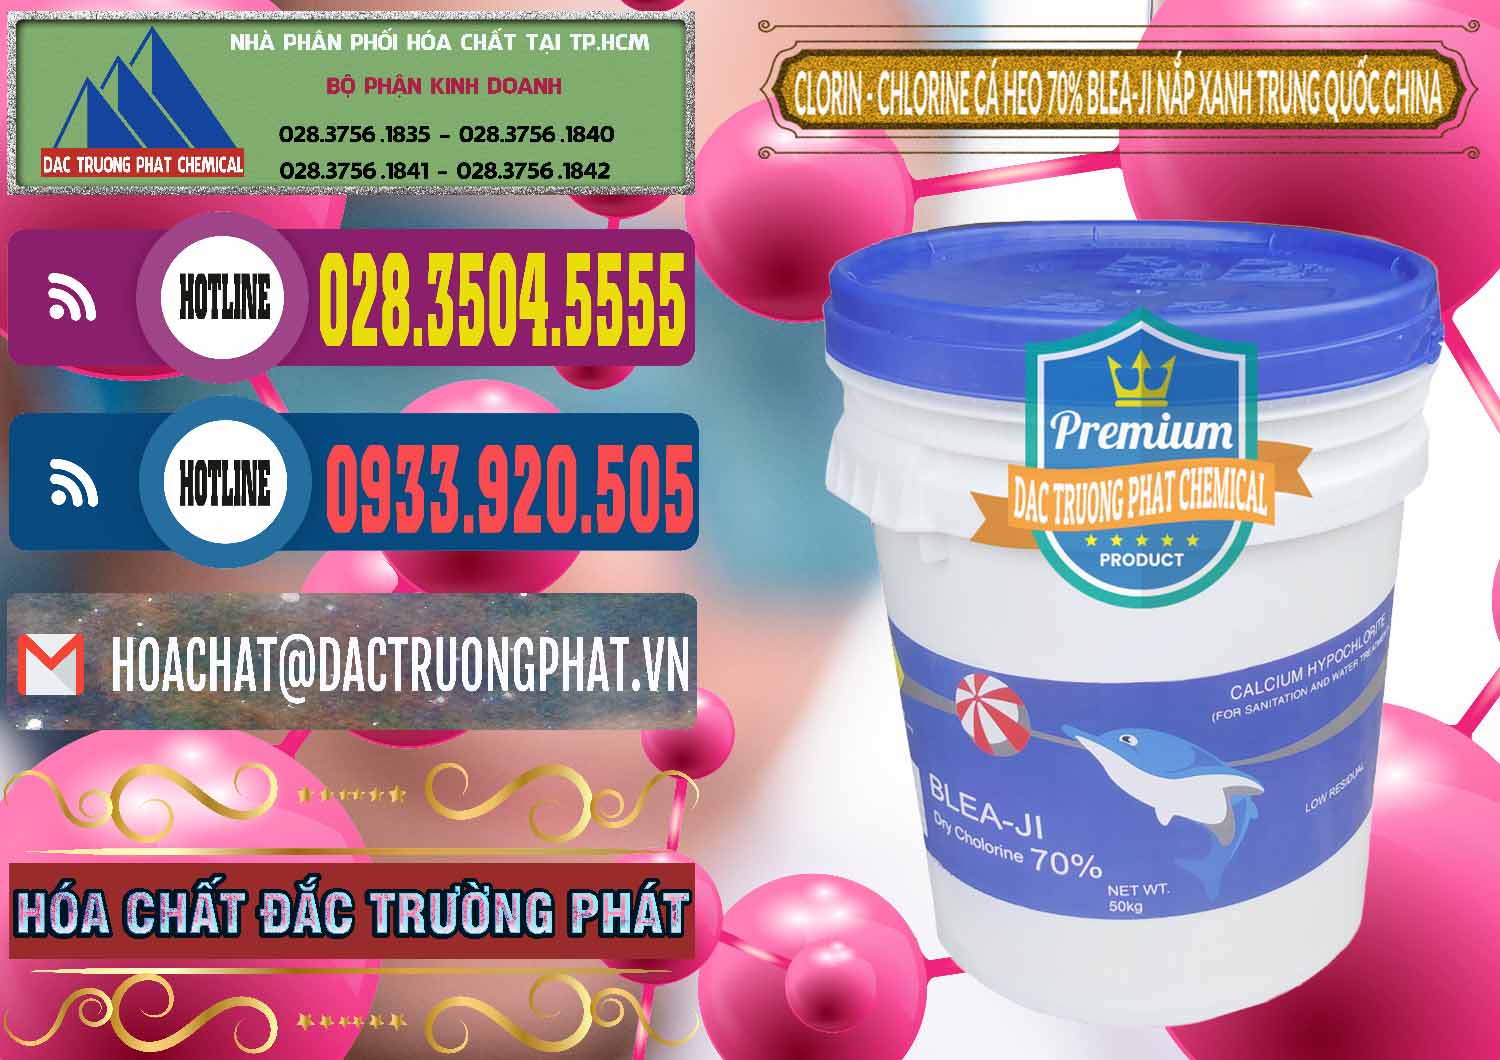 Đơn vị bán và phân phối Clorin - Chlorine Cá Heo 70% Cá Heo Blea-Ji Thùng Tròn Nắp Xanh Trung Quốc China - 0208 - Phân phối ( kinh doanh ) hóa chất tại TP.HCM - muabanhoachat.com.vn